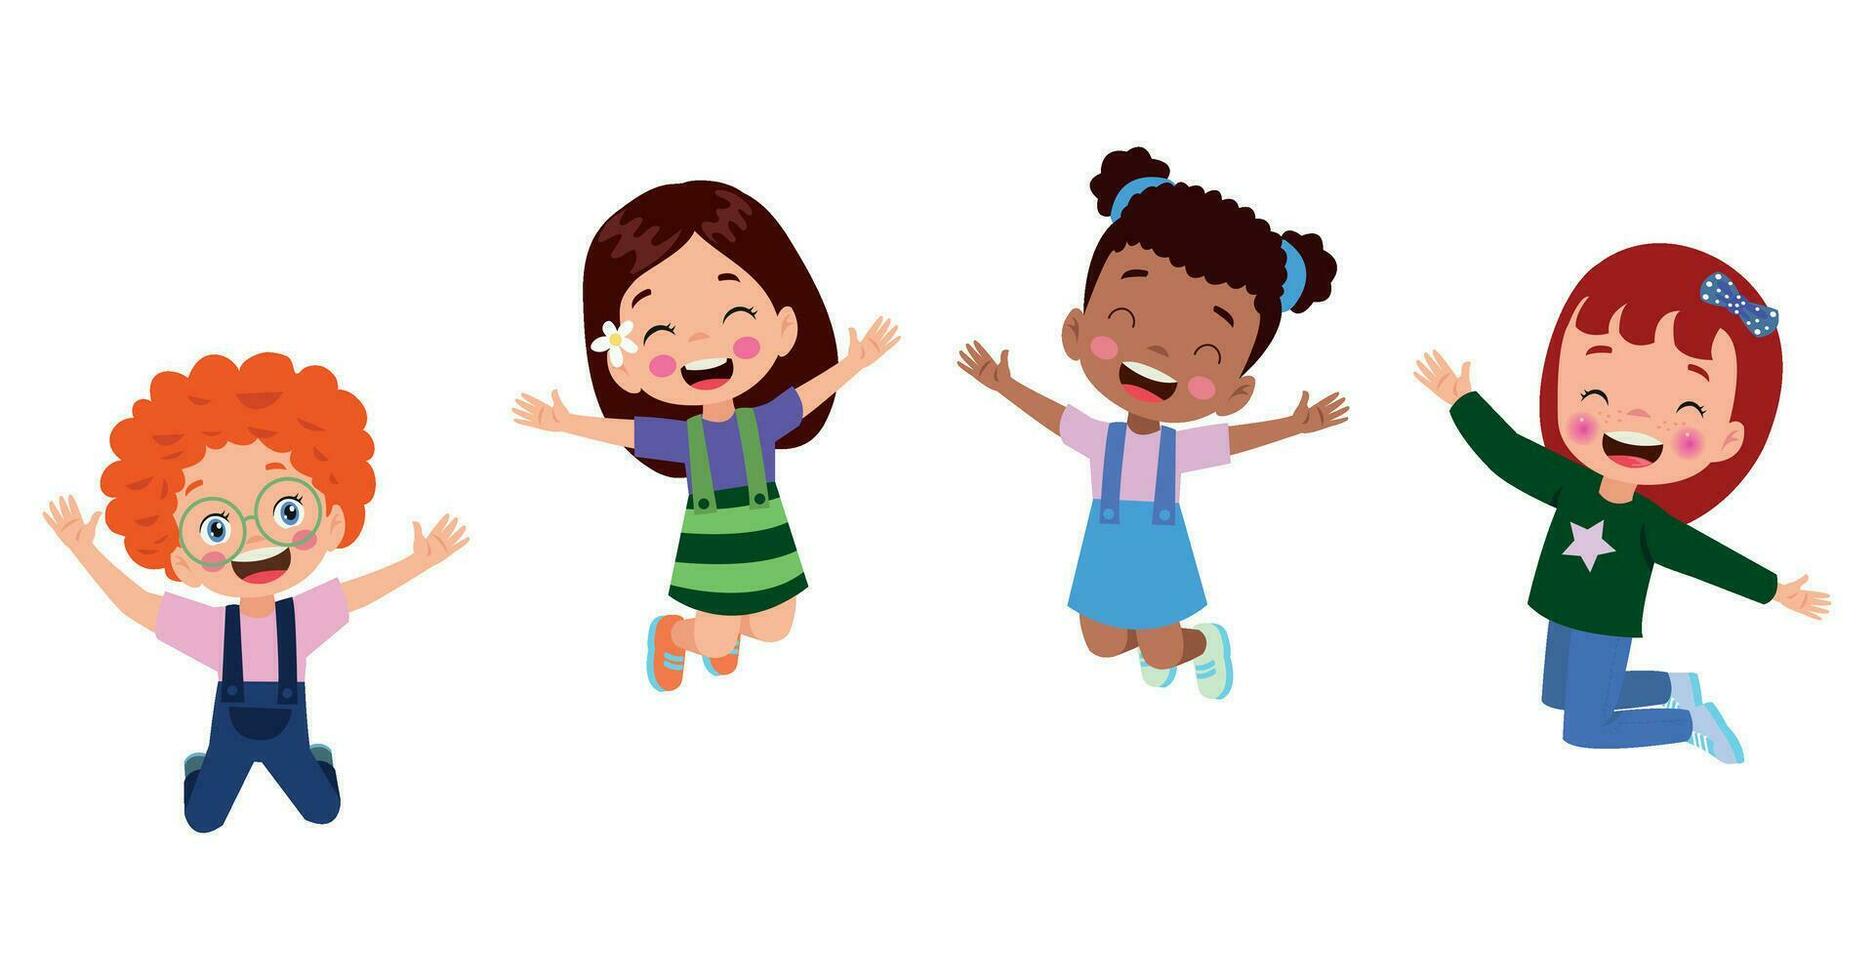 crianças pulando. crianças engraçadas felizes brincando e pulando em diferentes poses de ação educação pequenos personagens vetoriais de equipe. ilustração de crianças e crianças divertidas e sorriso vetor